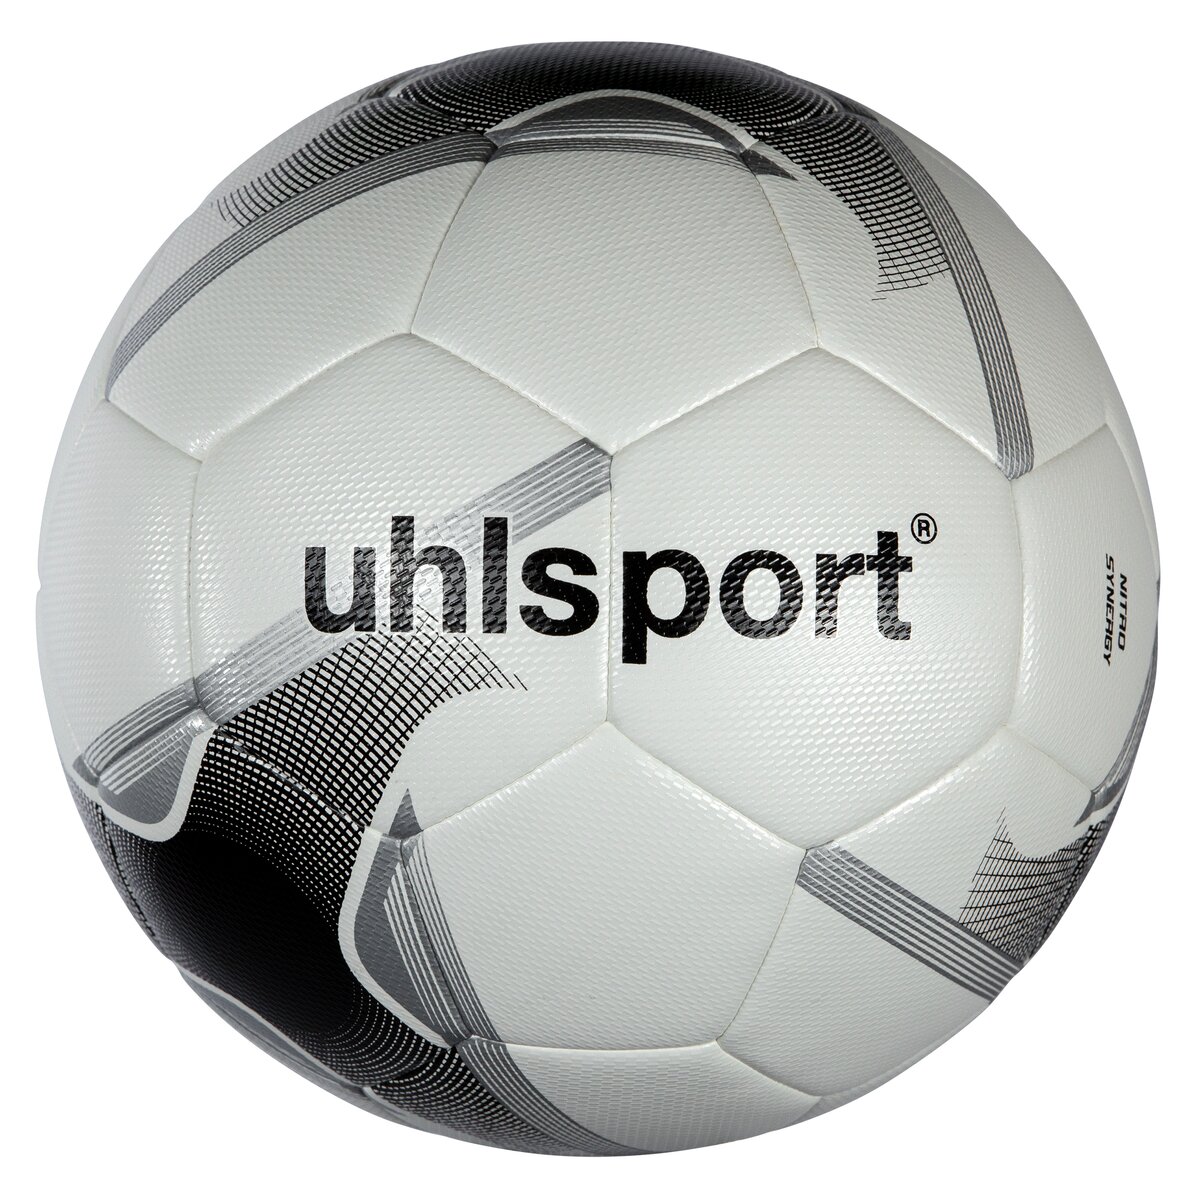 Uhlsport NITRO SYNERGY Fussball Spiel- und Training Ball 1001667021 Gr. 5 von uhlsport